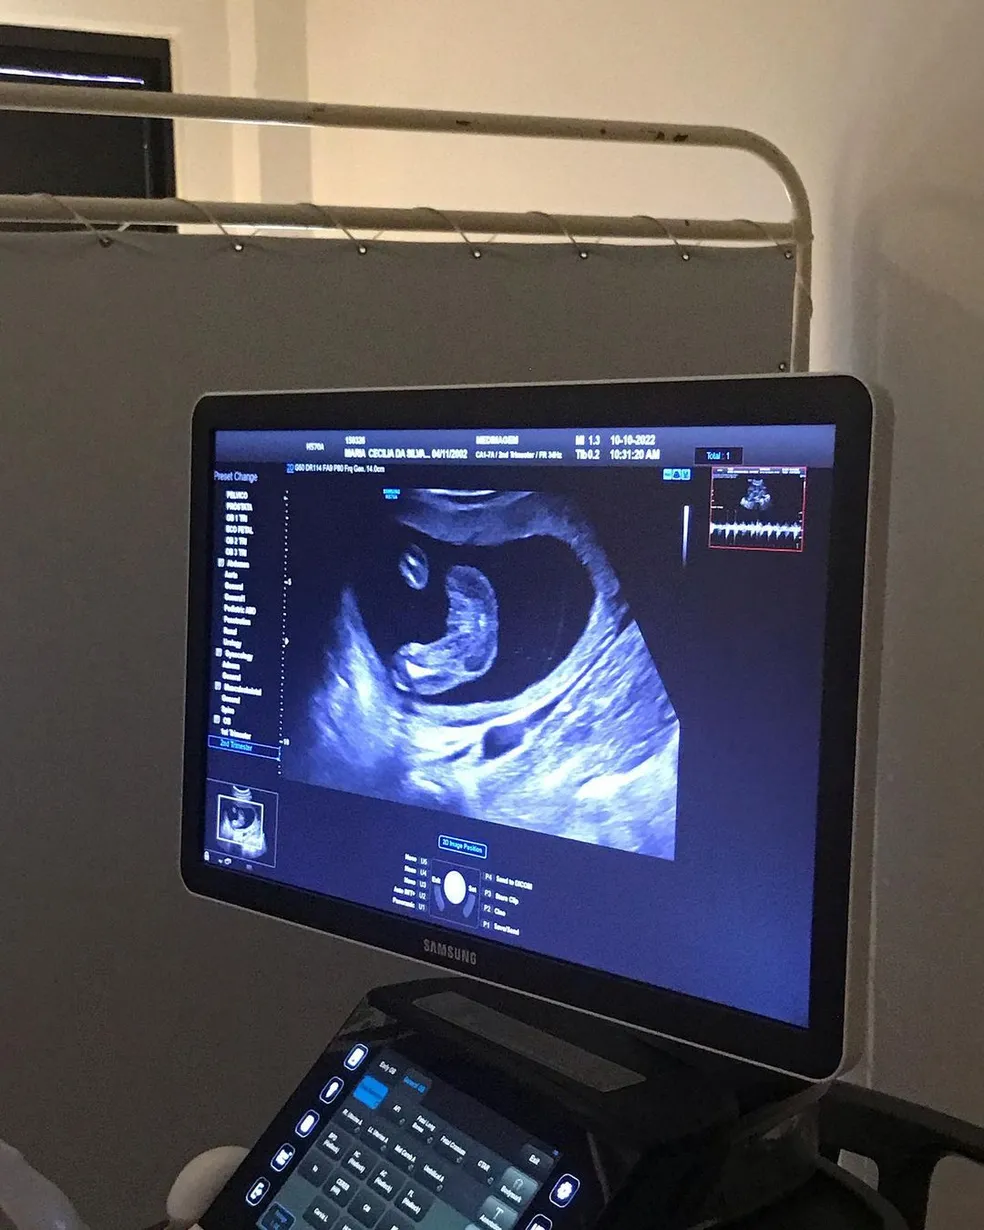 asomadetodosafetos.com - No sétimo mês de gravidez, mãe descobre que dará luz a gêmeos: "Achei que era um só"